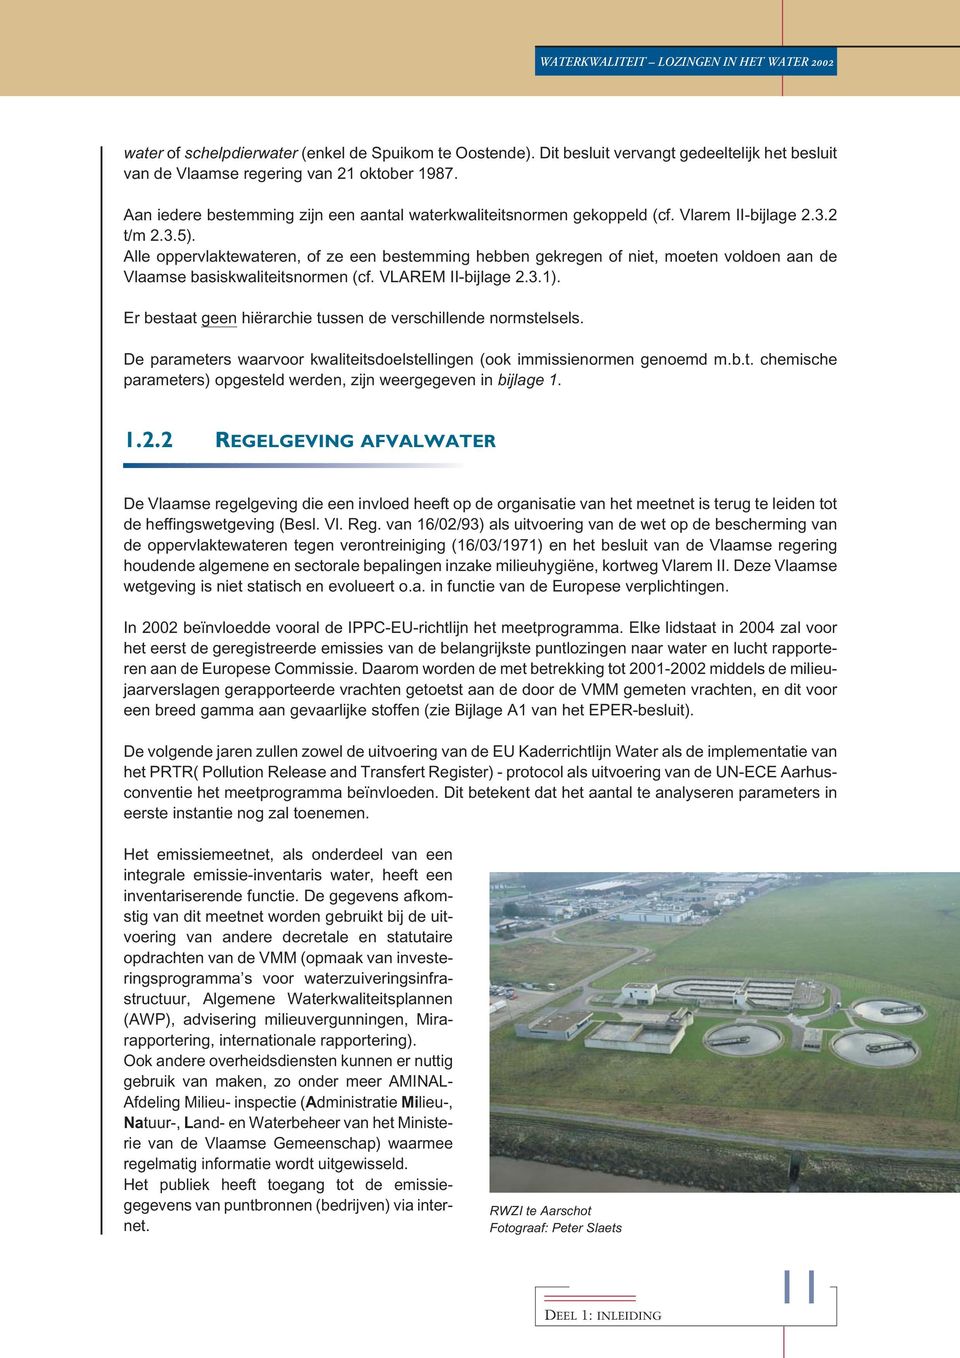 Alle oppervlaktewateren, of ze een bestemming hebben gekregen of niet, moeten voldoen aan de Vlaamse basiskwaliteitsnormen (cf. VLAREM II-bijlage 2.3.1).